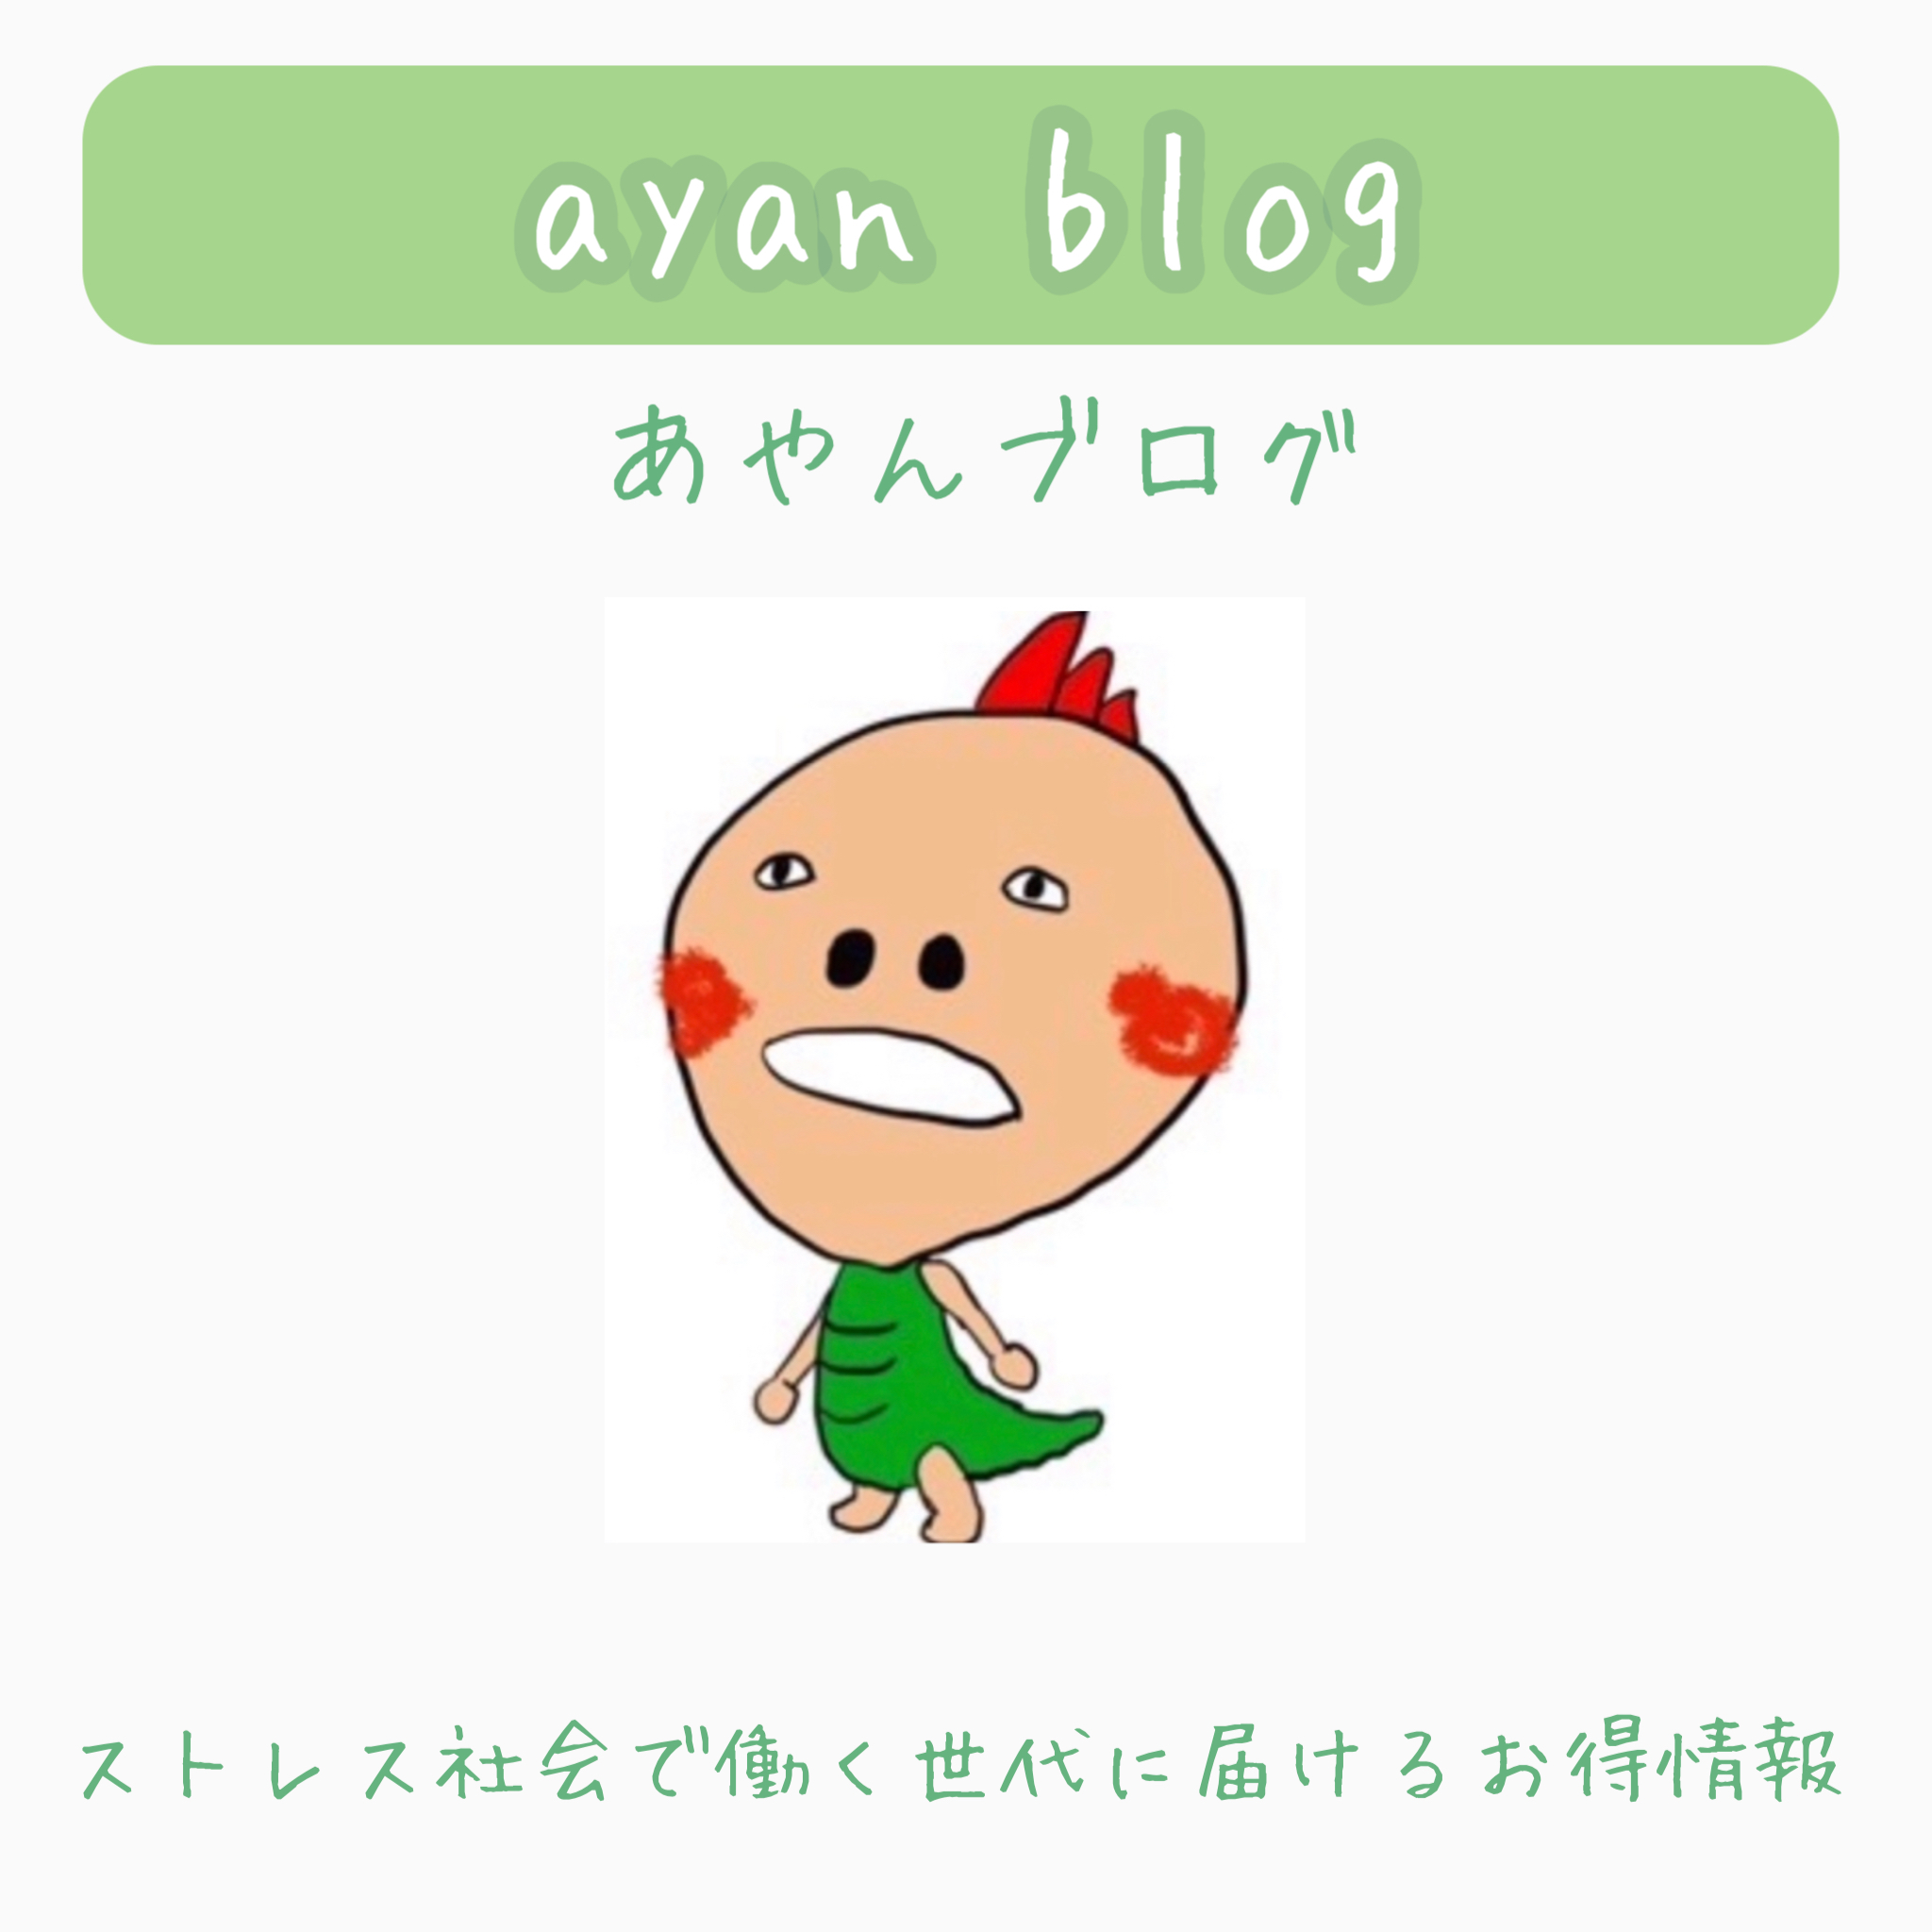 ayan blog-あやんブログ